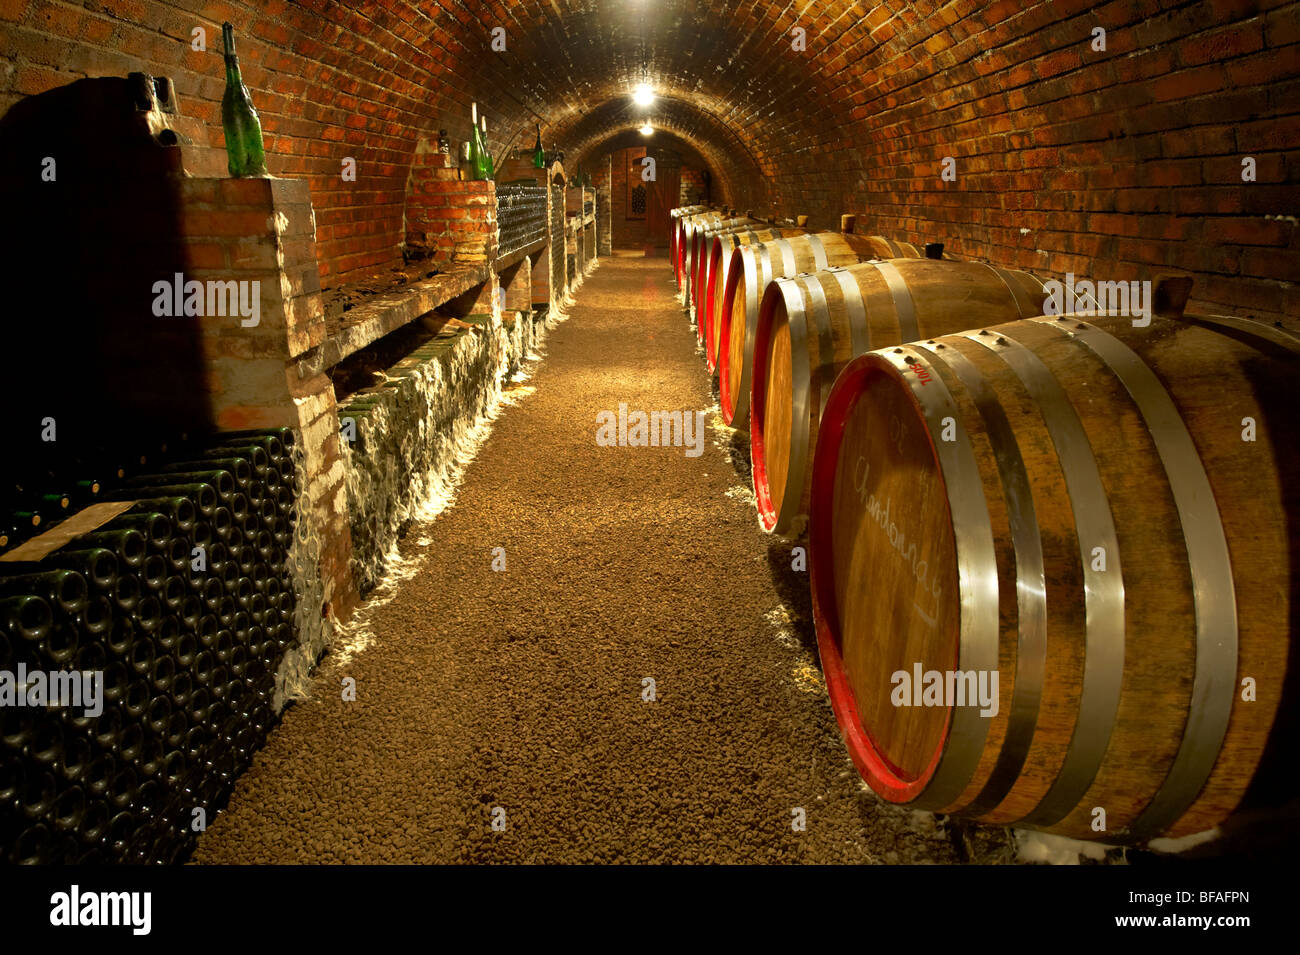 Kovacs wine cellars' wine barrels and bottles ( Kovacs Borhaz ) Hajos, Hungary; Stock Photo